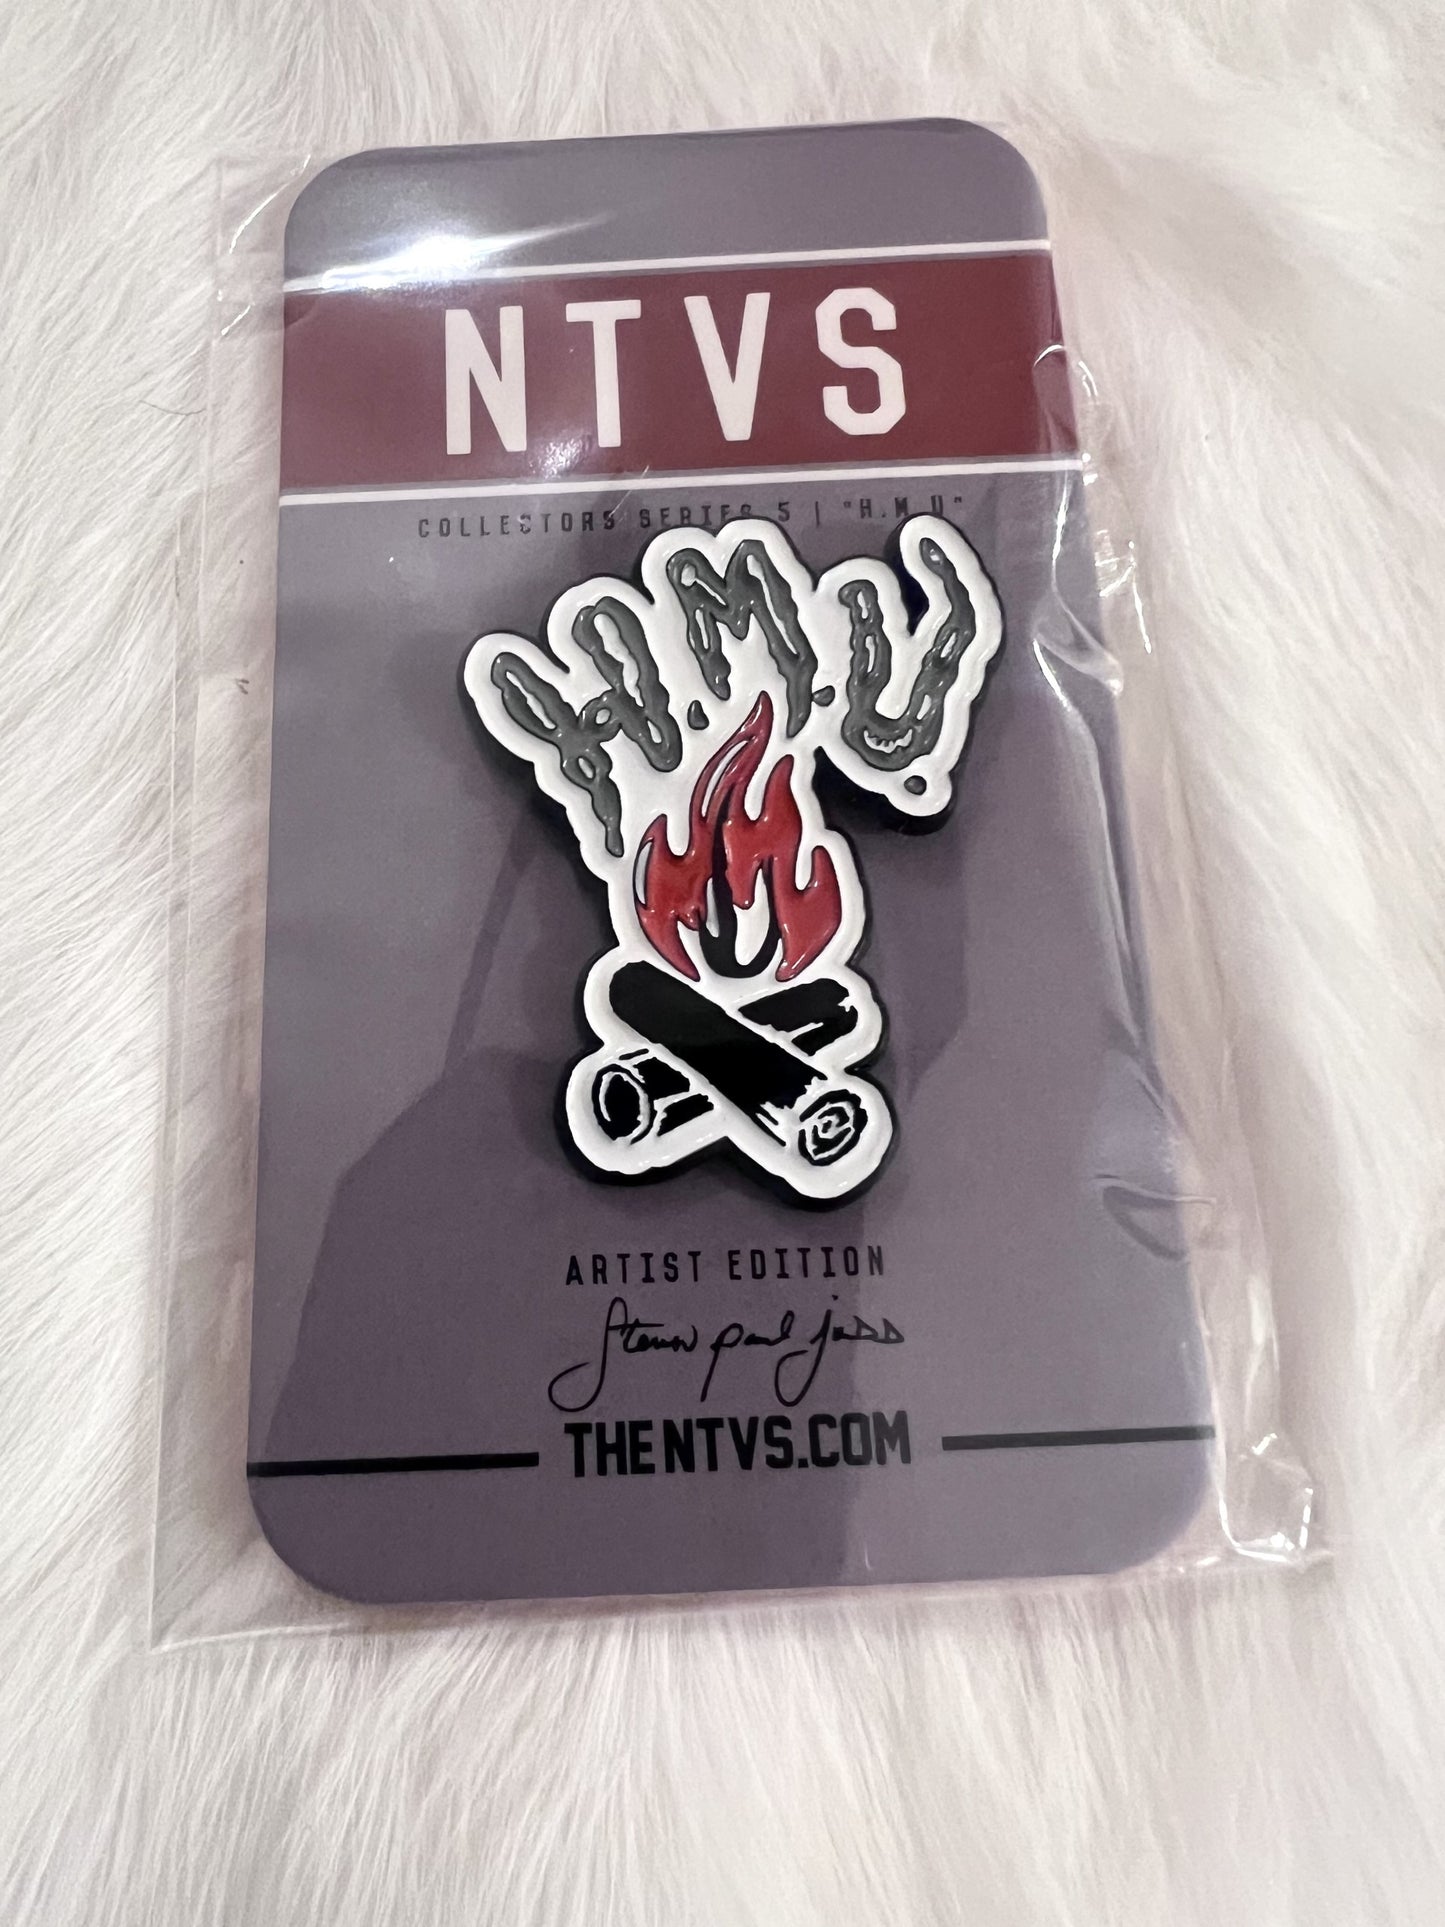 NTVS Pins